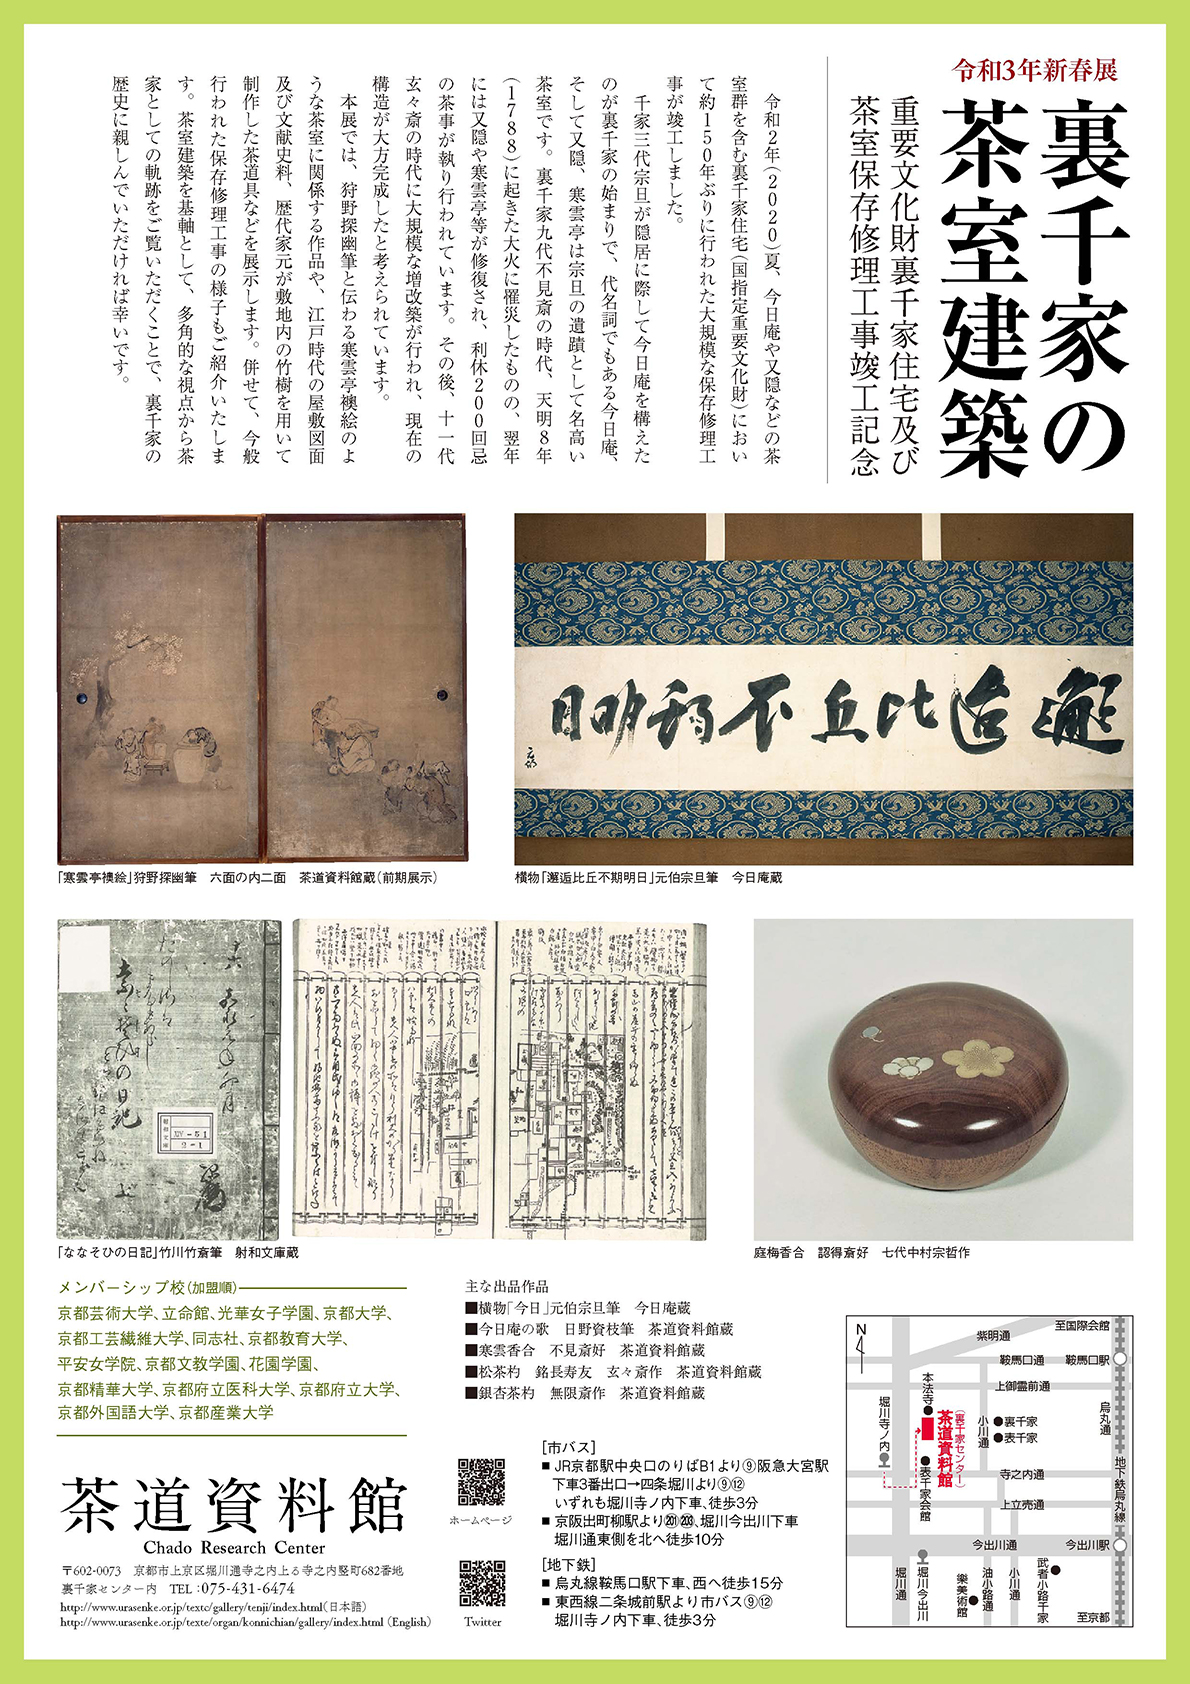 裏千家の茶室建築 展 茶道資料館にて Kyoto Crafts Magazine